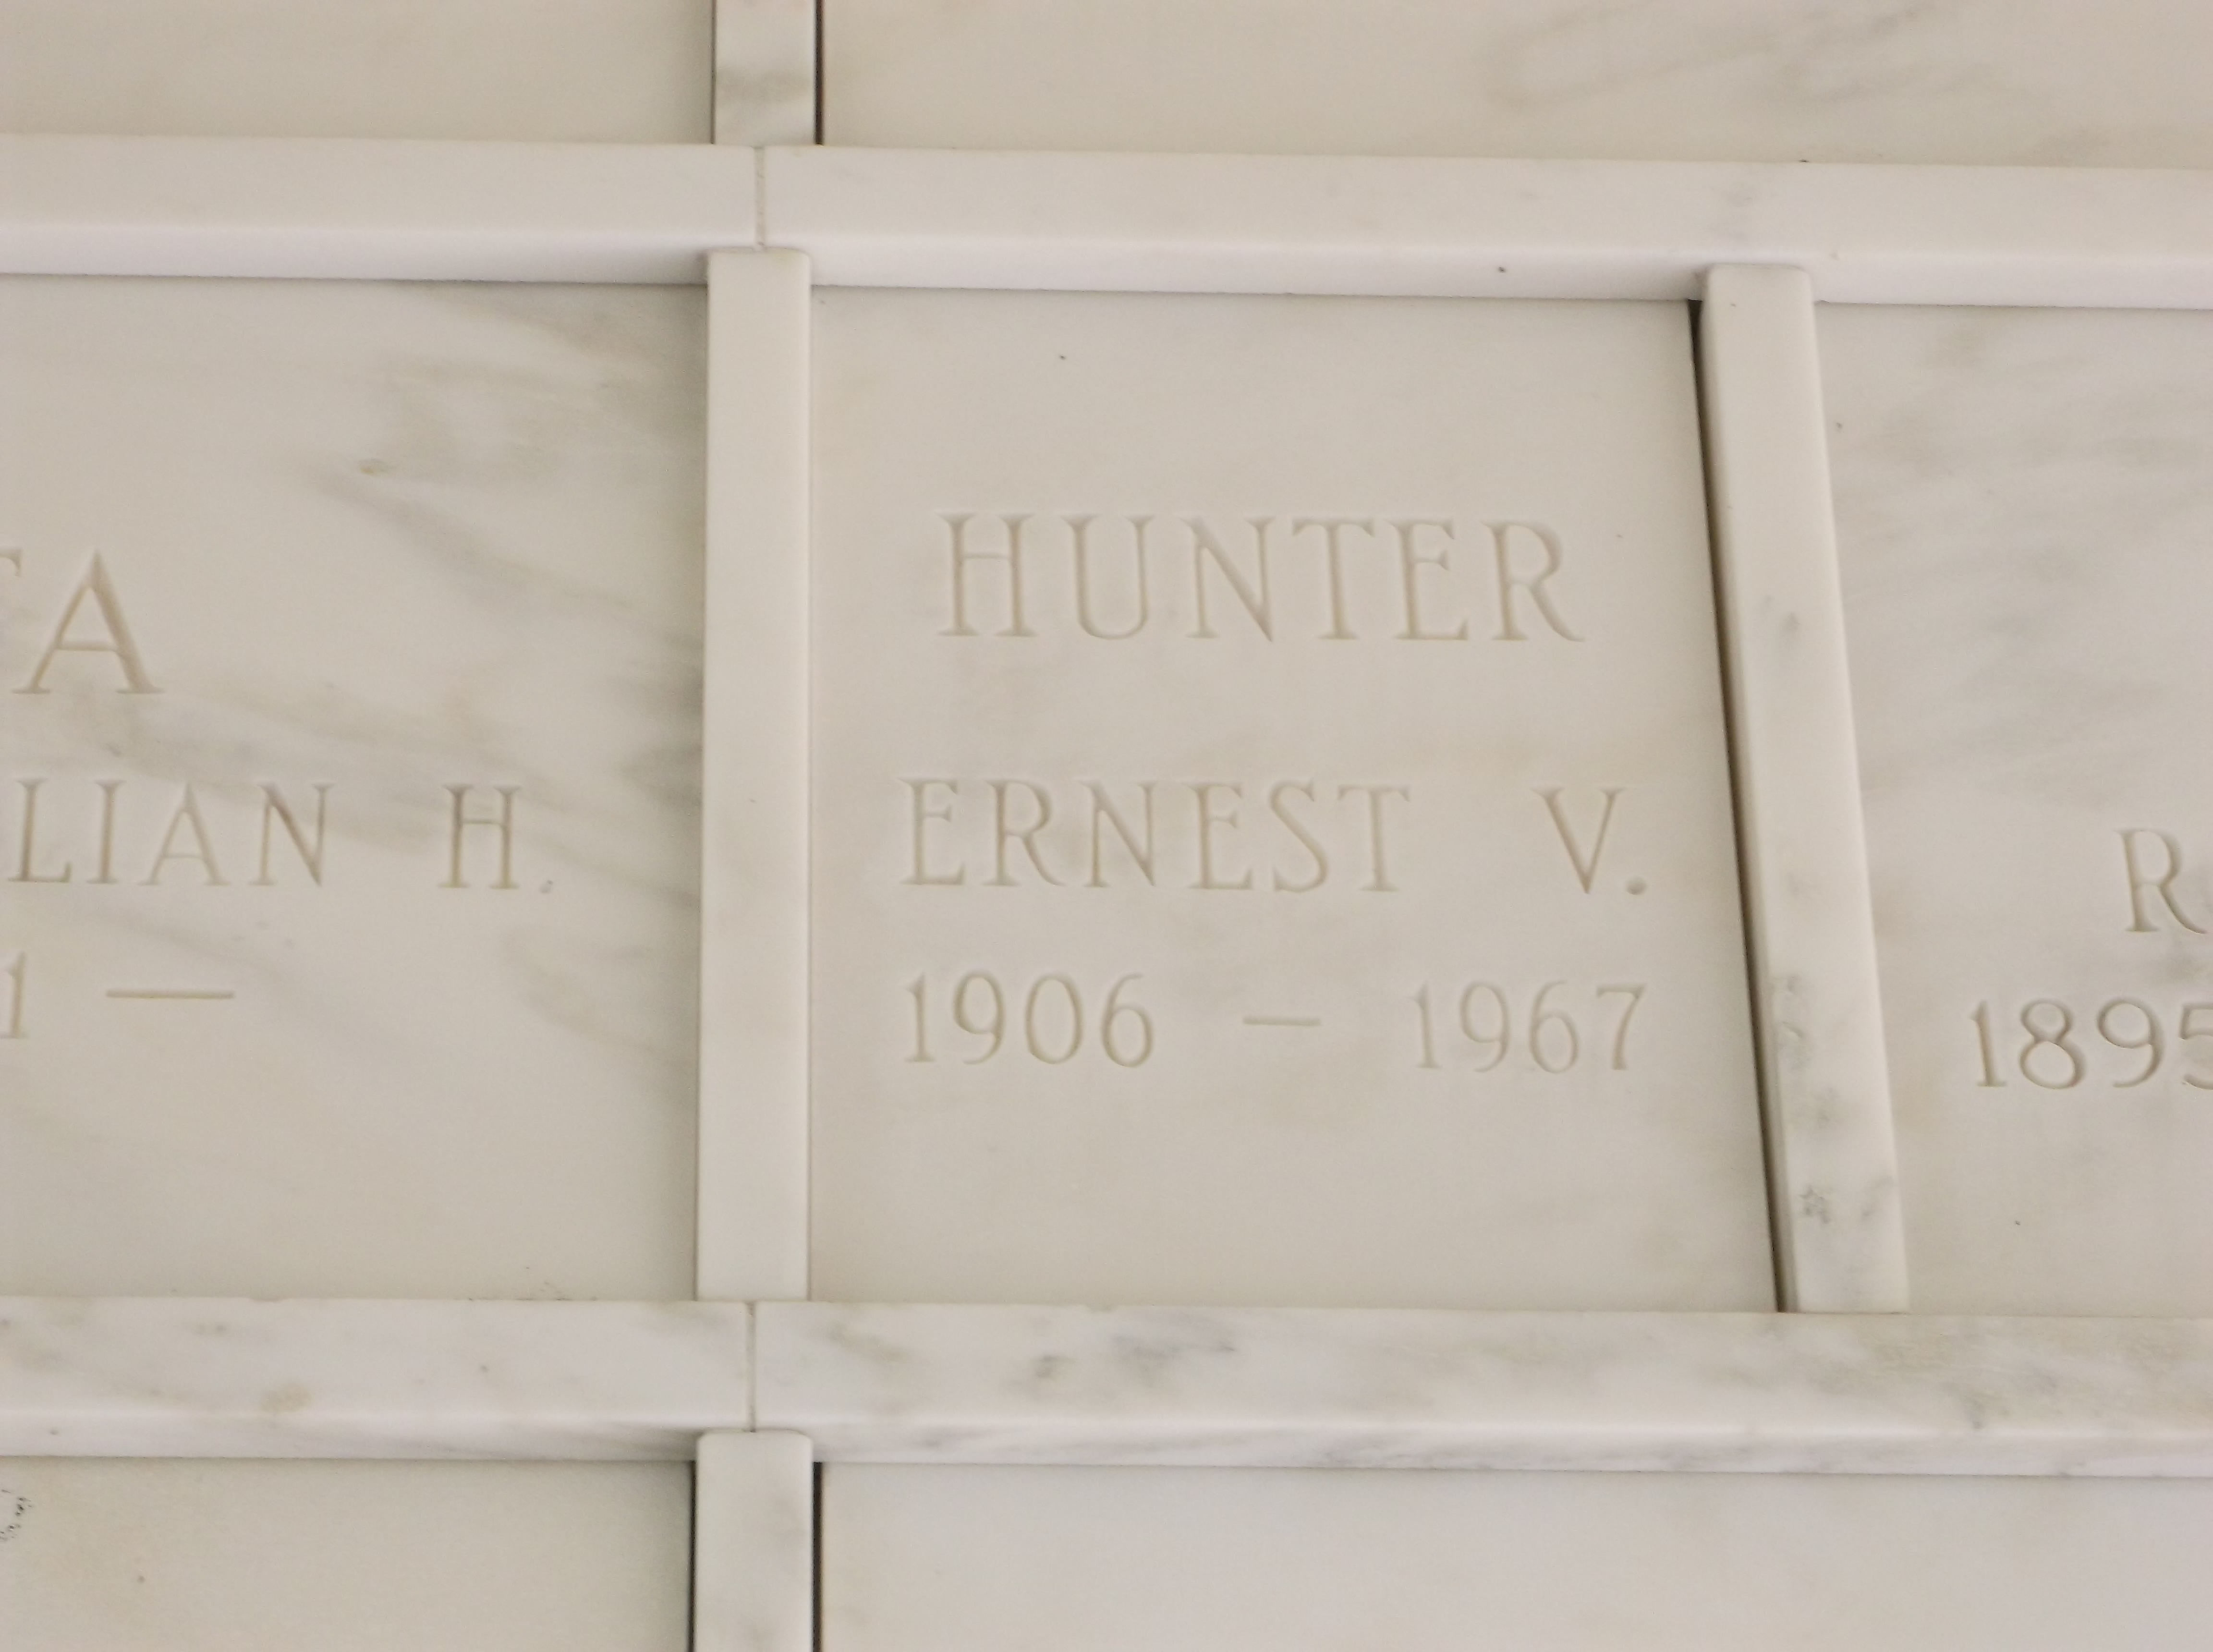 Ernest V Hunter